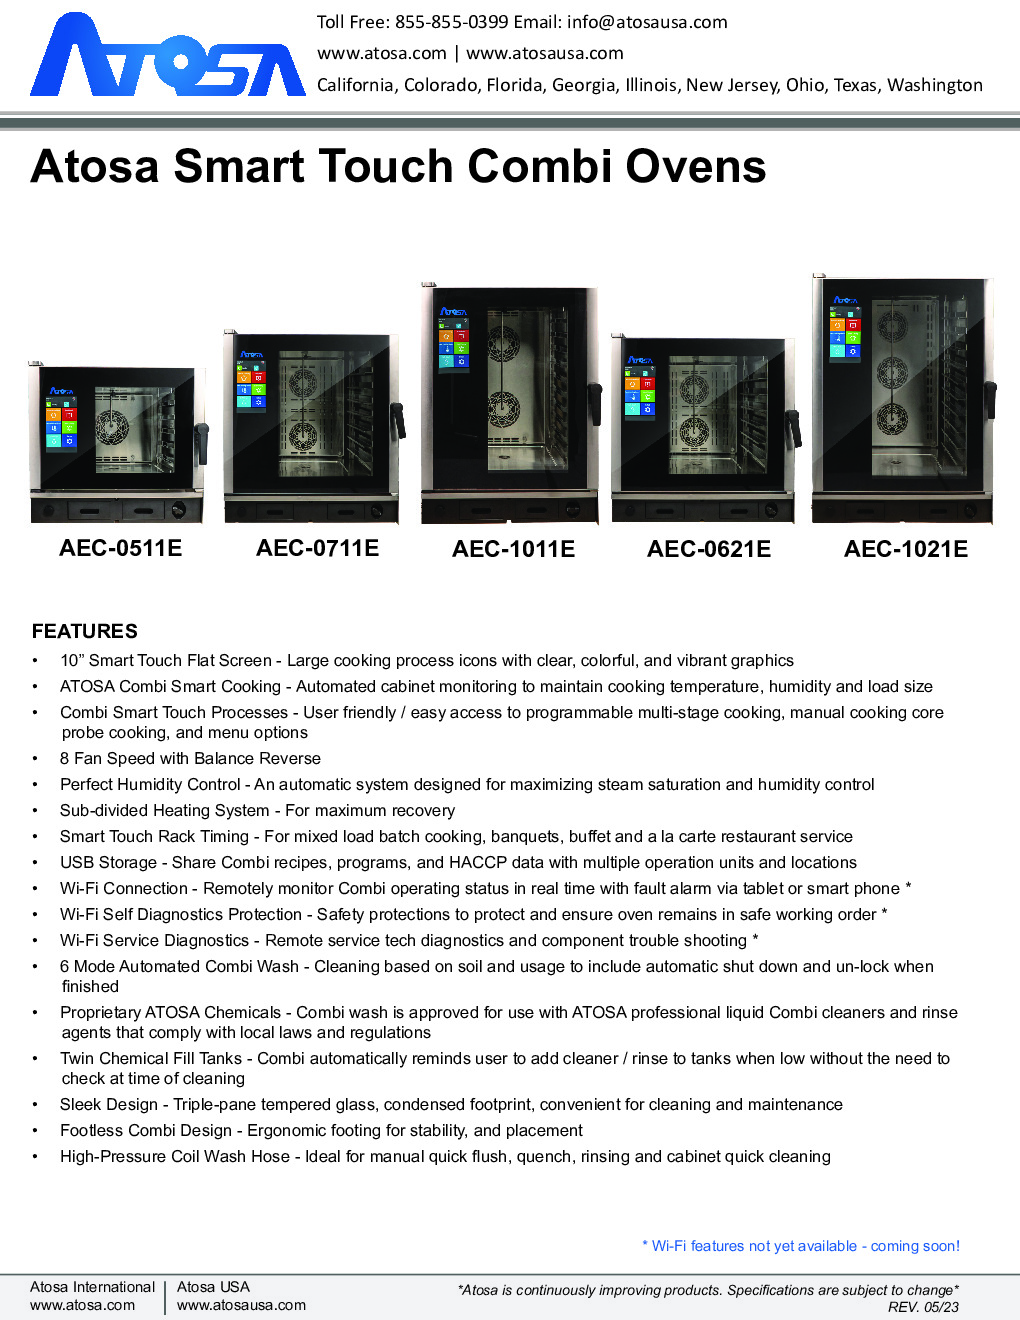 Atosa USA AEC-0621 E Electric Combi Oven